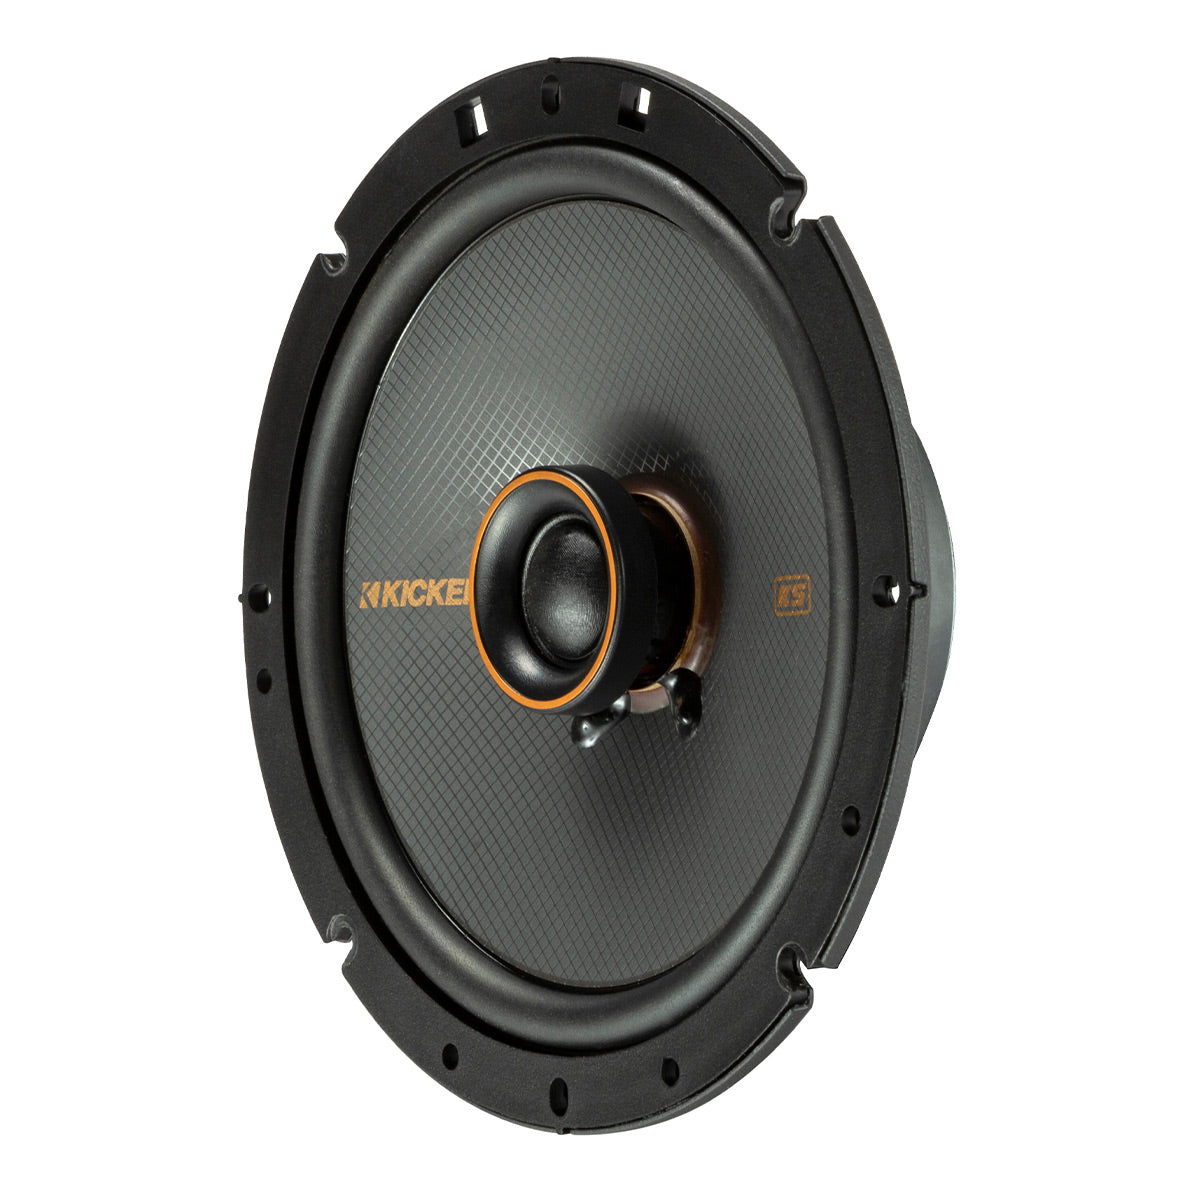 Kicker 51KSC6704 6.75" KS Series Coaxial Speakers - Pair